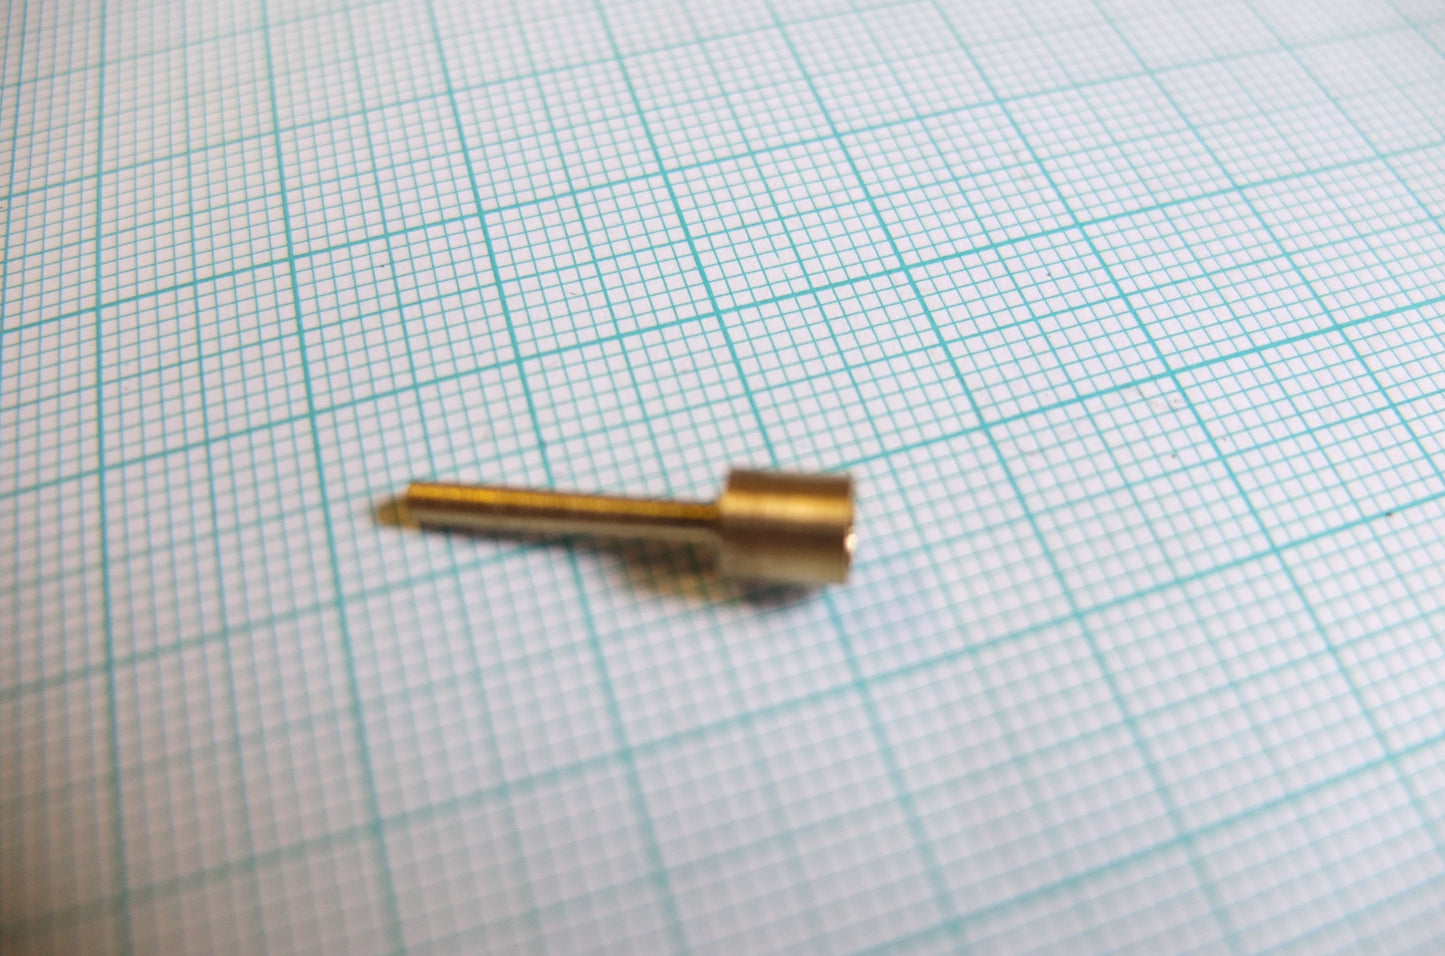 P1/230A Brass terminal pin (dynamo)